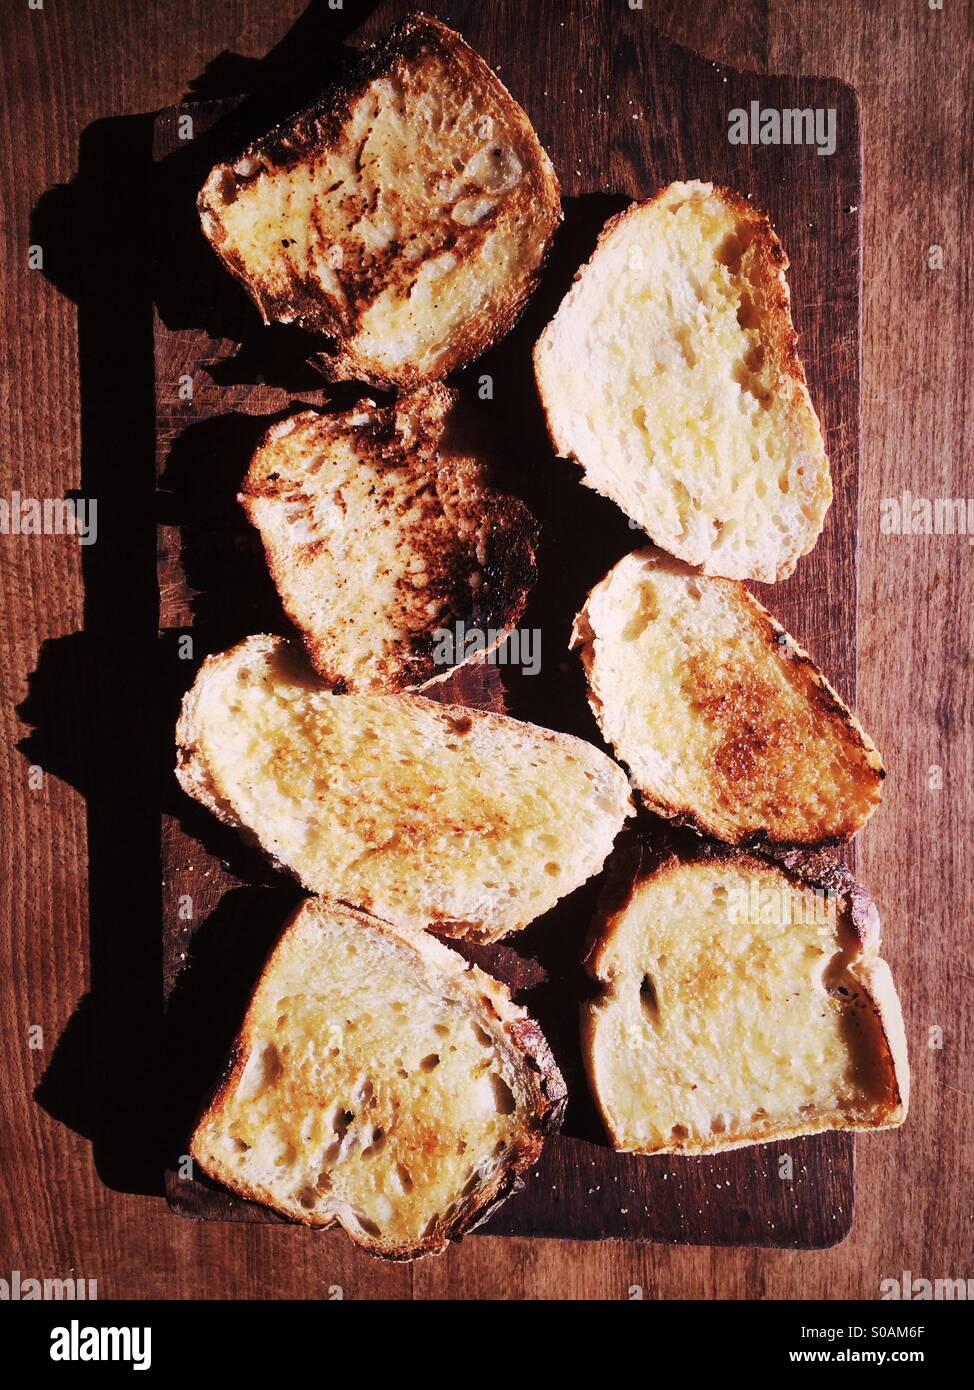 Tranches de pain au levain beurré sur une planche à découper en bois. Banque D'Images